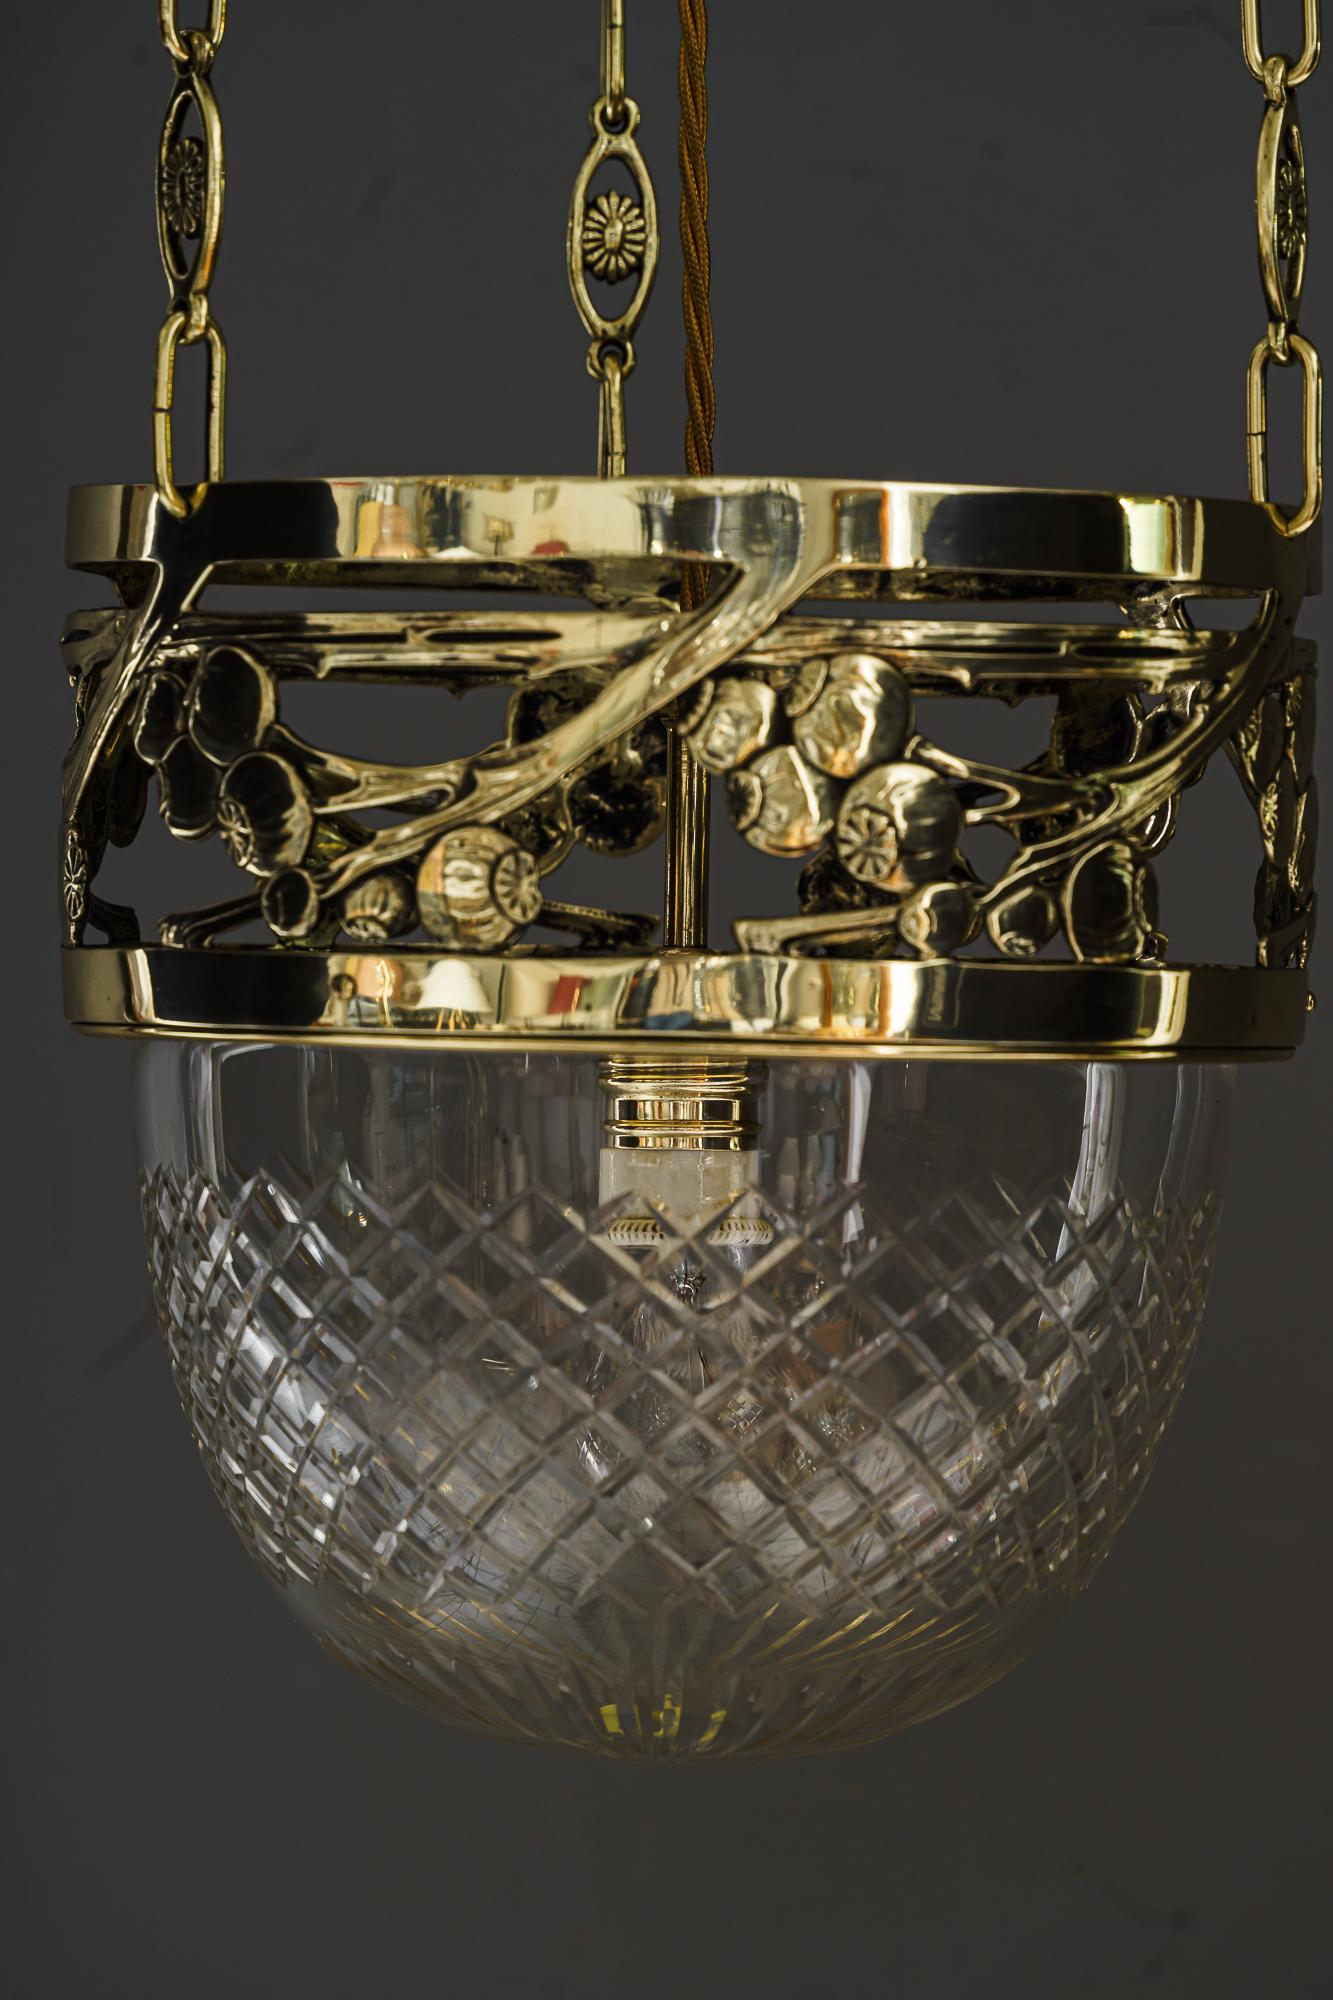 Jugendstil pendant vienna around 1908
Brass polished and stove enameled
Original antique cut glass.